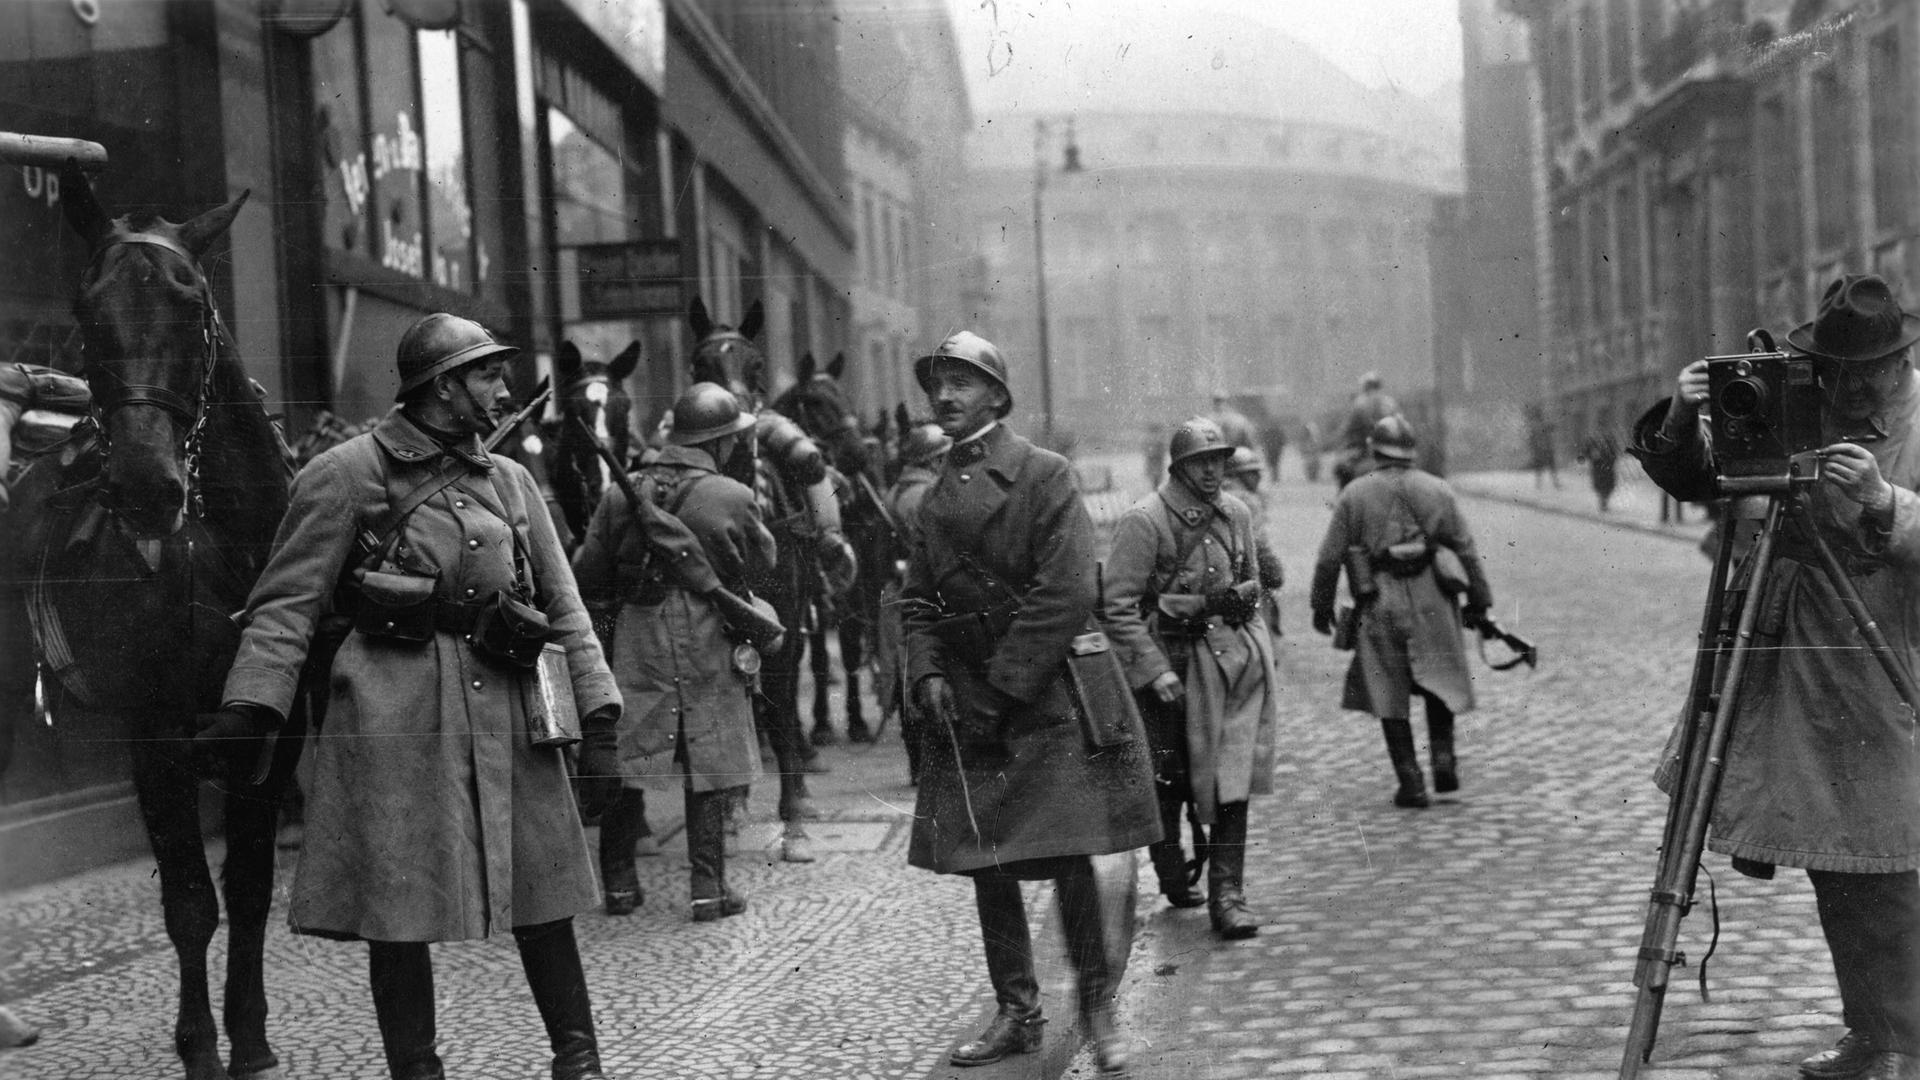 Französische Soldaten in Essen bei der Besetzung des Ruhrgebiets durch französische Truppen. Links hält ein Soldat ein Pferd, andere Soldaten gehen in der Straße umher, ganz rechts steht ein Fotograf mit seiner aufgebauten Kamera.